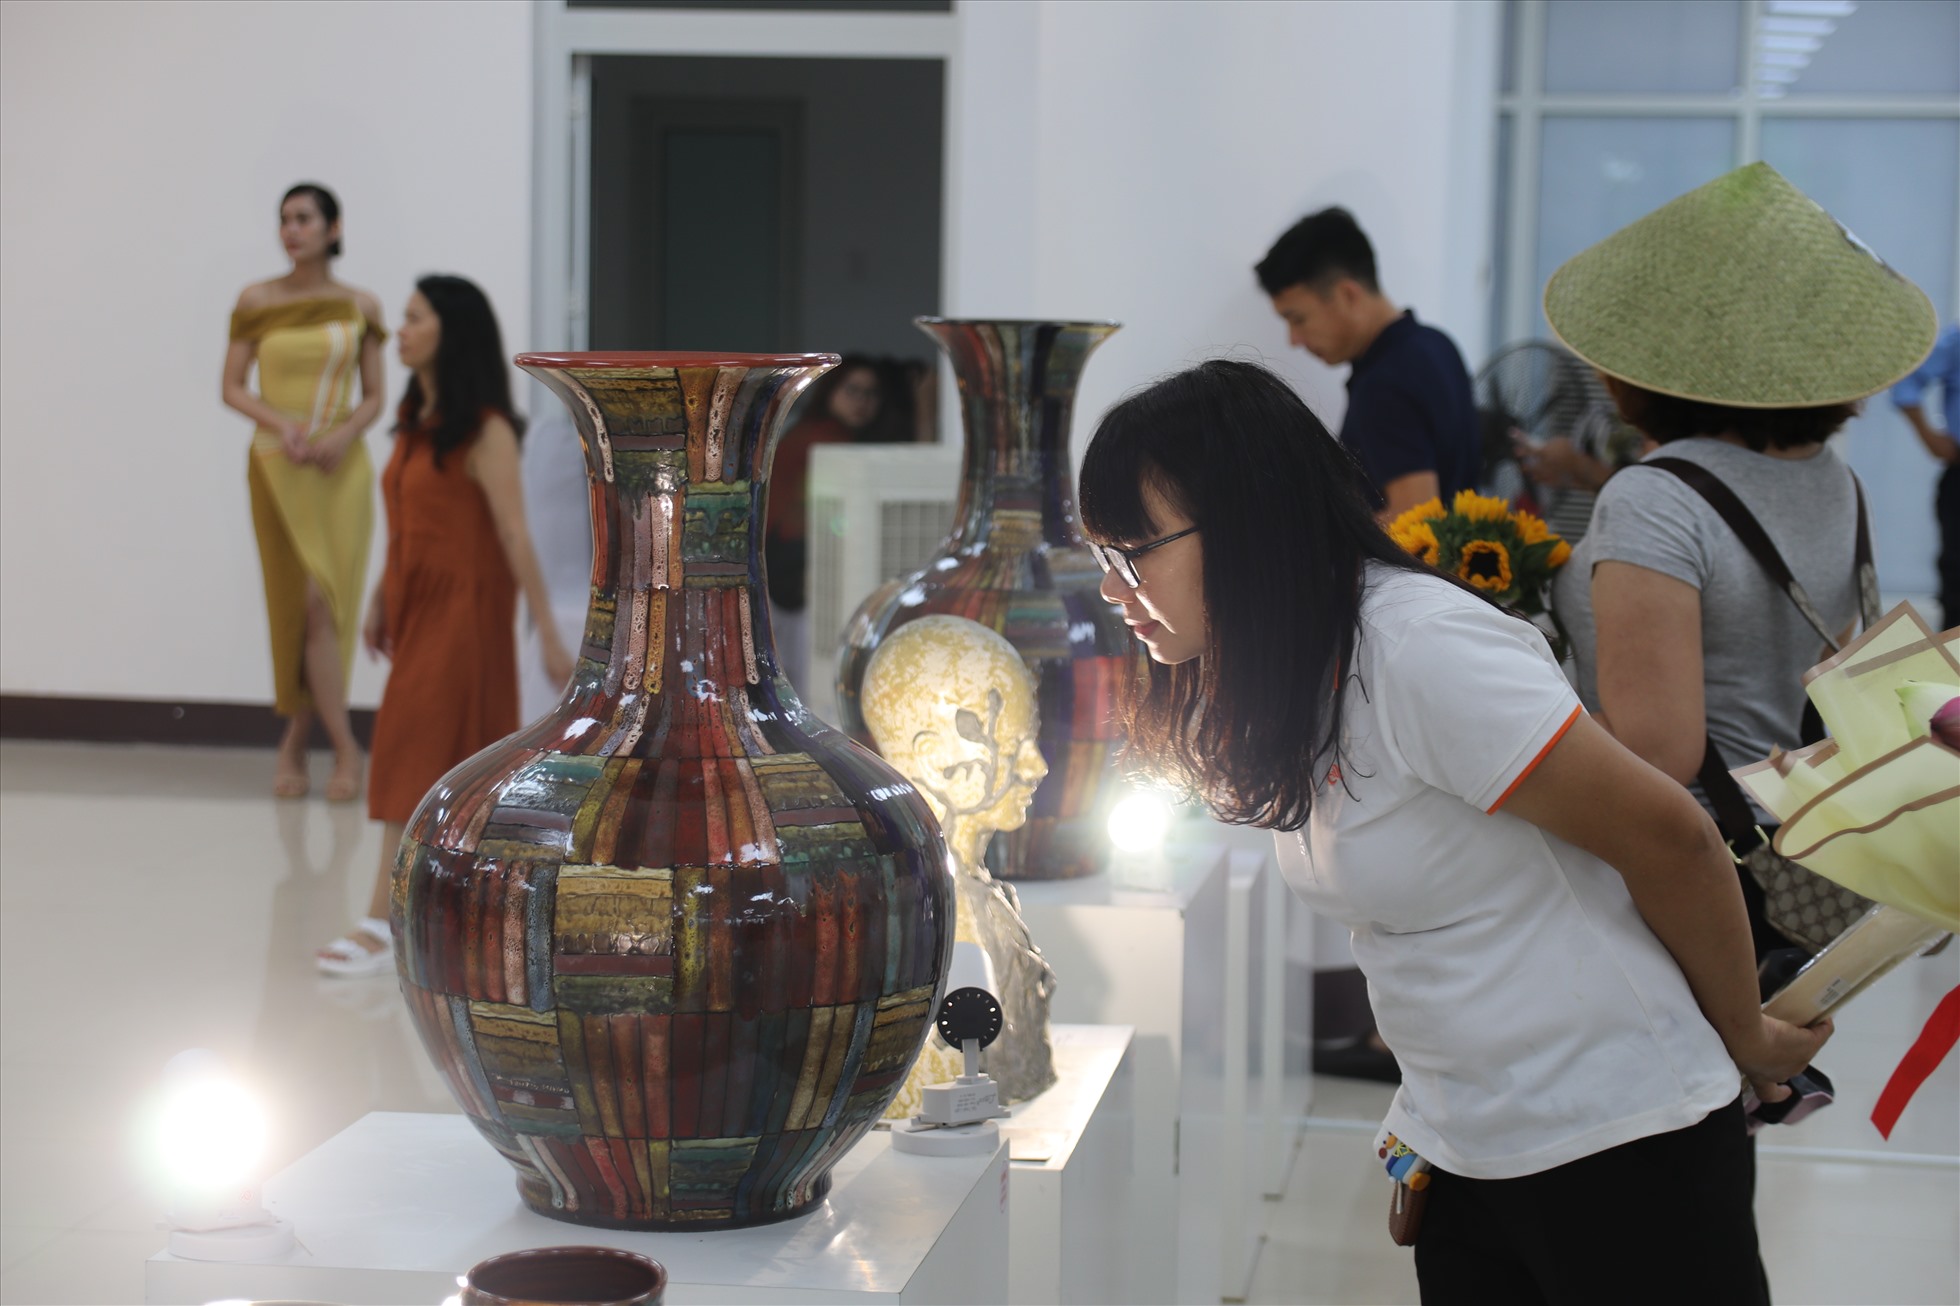 Ngoài không gian ngoài trời, rất nhiều du khách chọn các triển lãm trong nhà để trải nghiệm, với vô số sản phẩm thủ công, hiện vật quý được trưng bày.